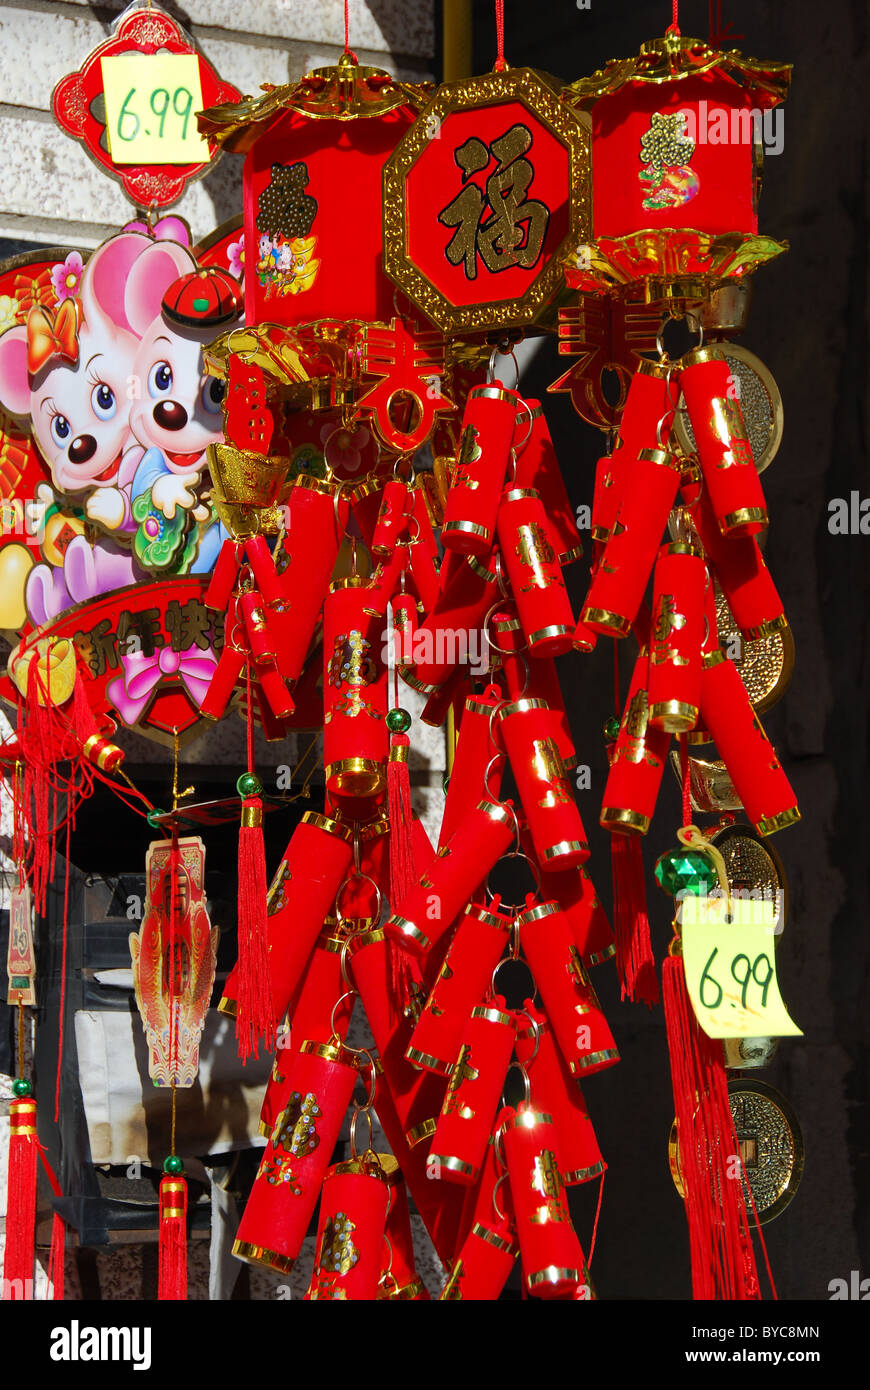 Ornements chinois traditionnels dans une boutique dans le quartier chinois de Toronto Banque D'Images